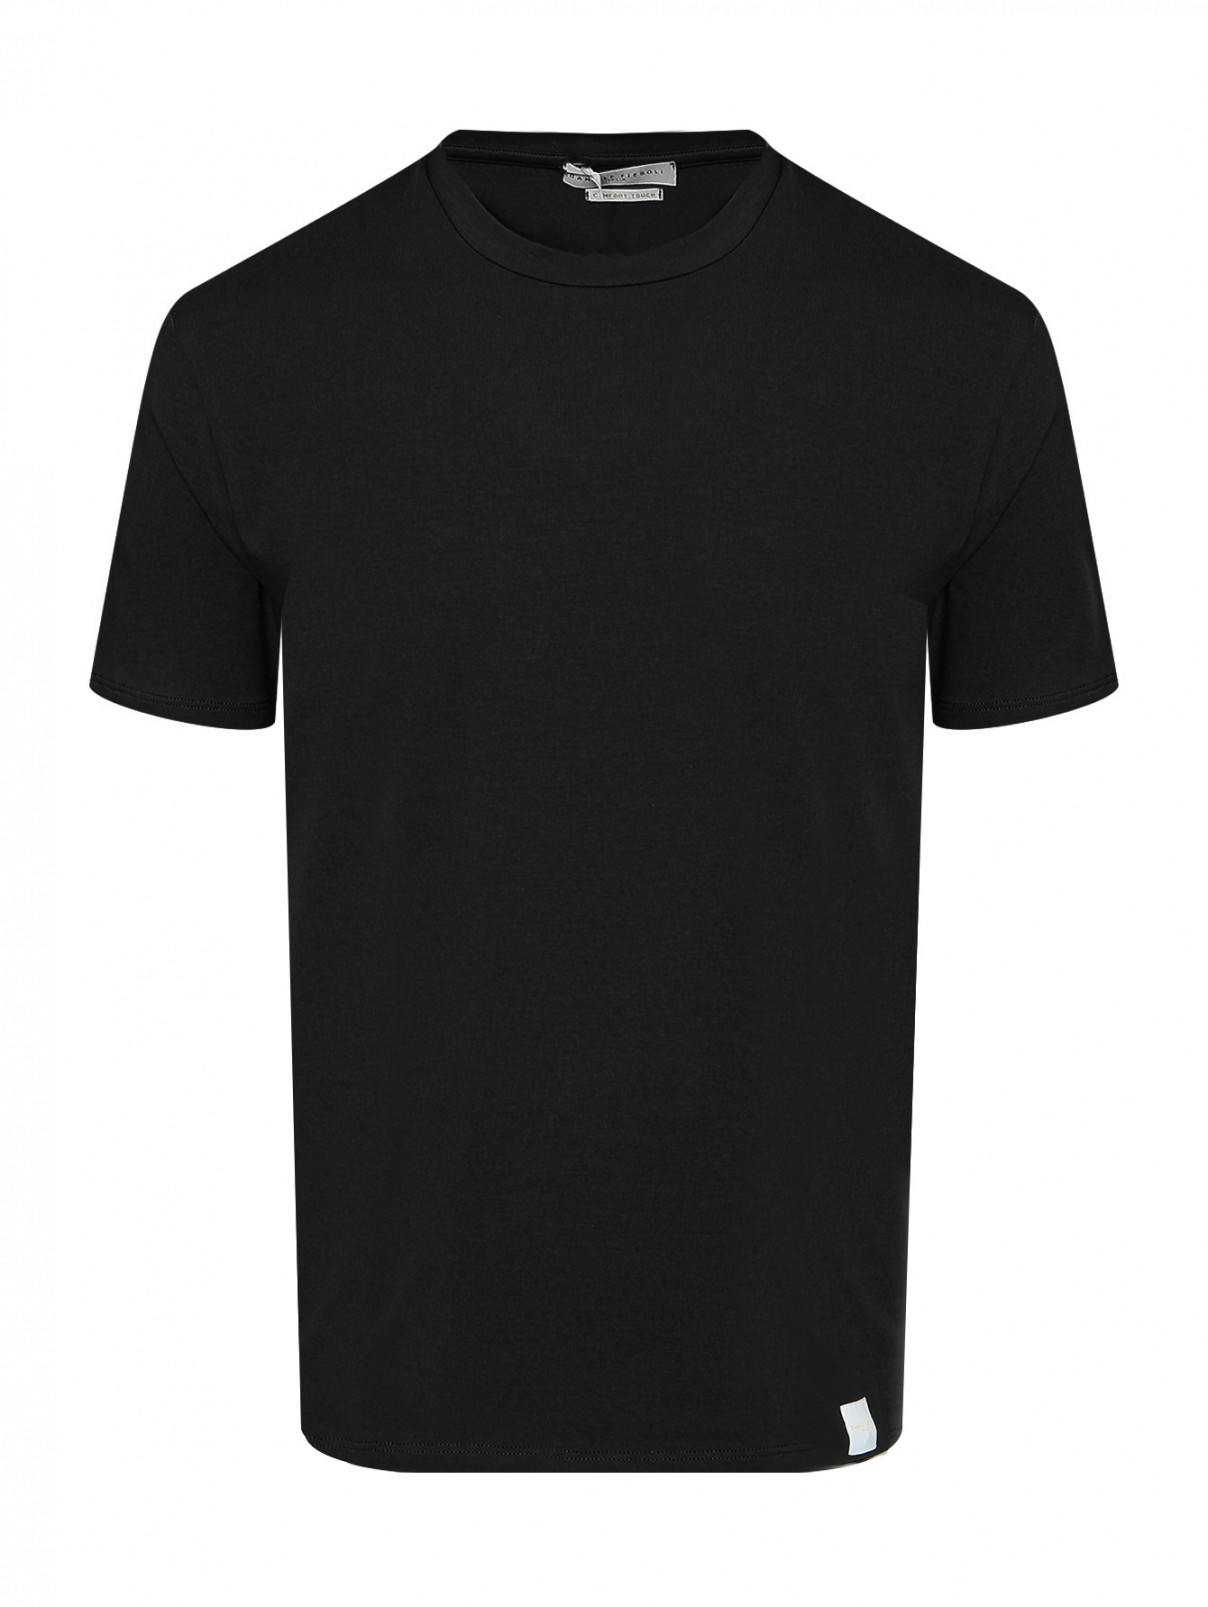 Базовая футболка из хлопка с логотипом Daniele Fiesoli  –  Общий вид  – Цвет:  Черный